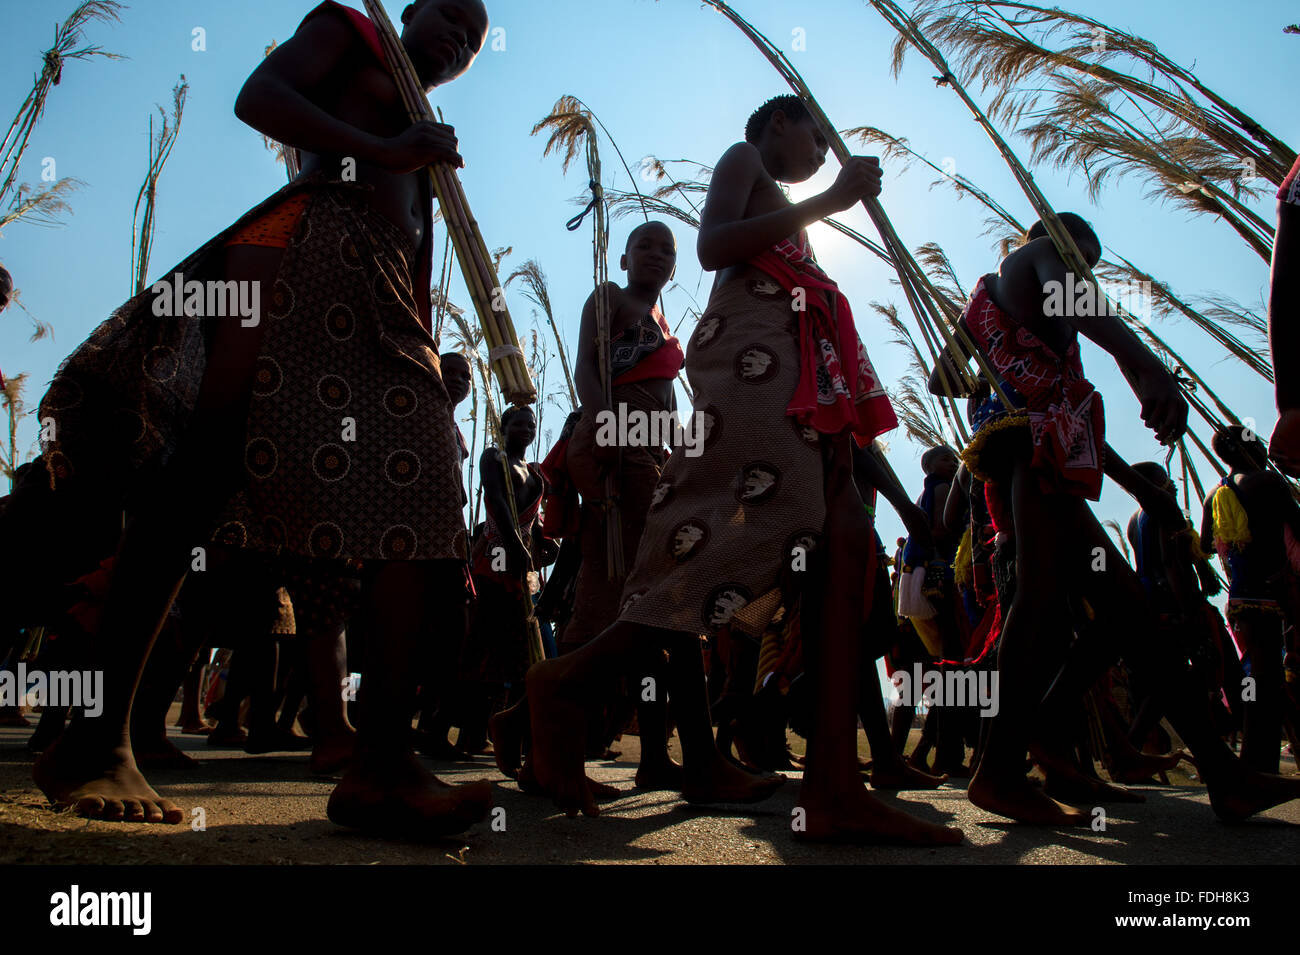 Ludzidzini, Swasiland, Afrika - die Swazi Umhlanga oder Reed Dance Zeremonie, 100.000 unverheiratete Frauen oder Jungfrauen, feiern thei Stockfoto